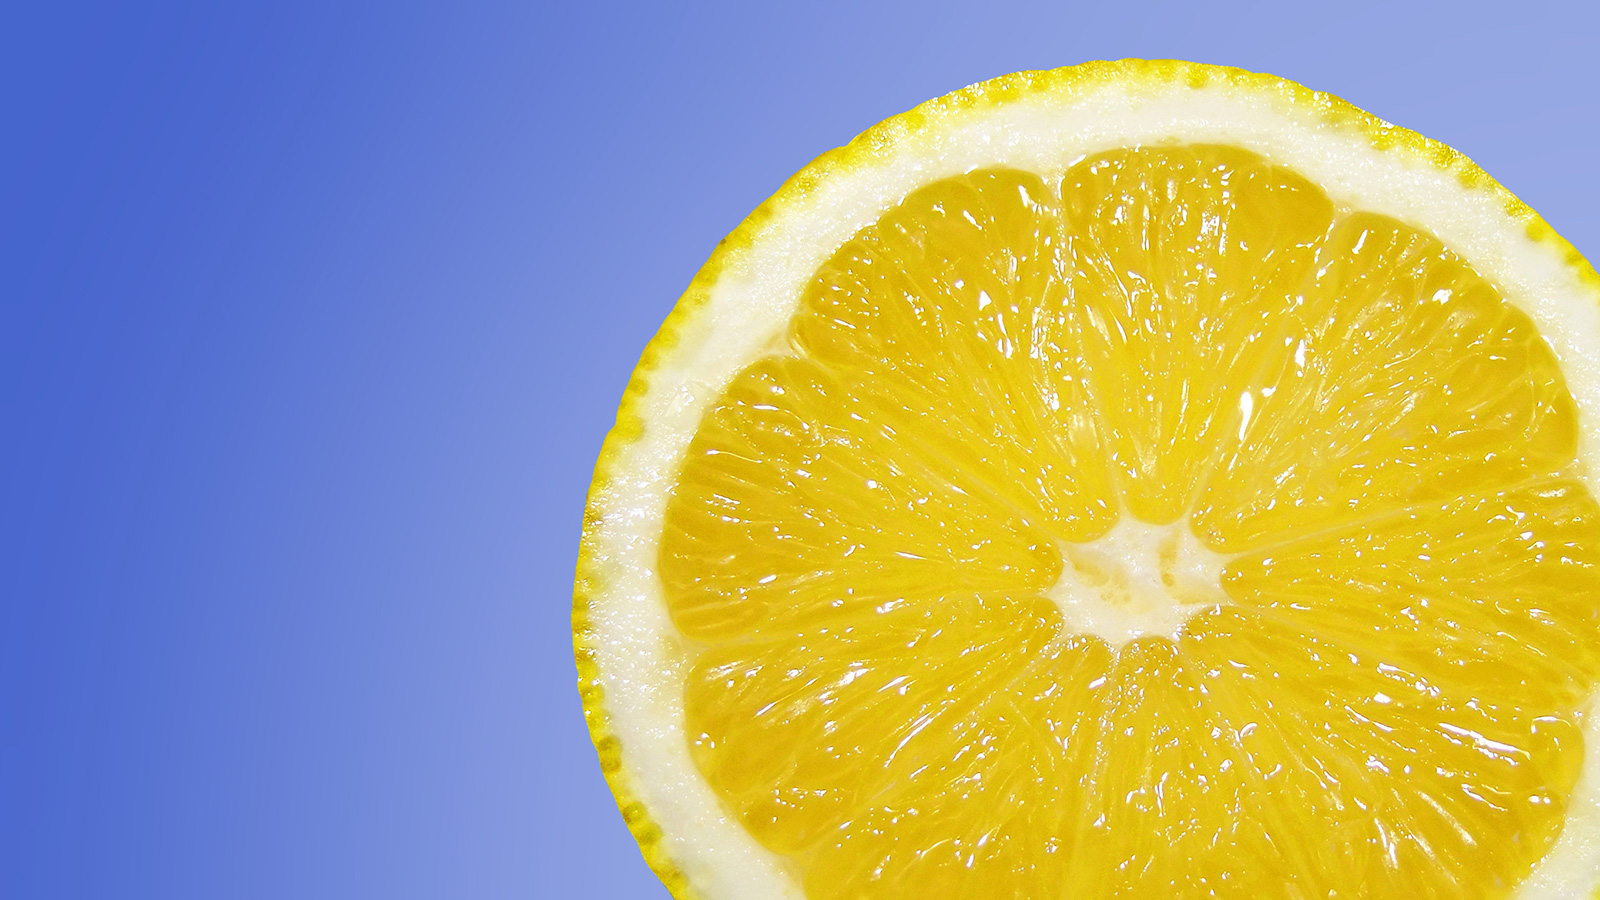 الليمون يحمي الشعر من الأشعة فوق البنفسجية (بيكسابي)